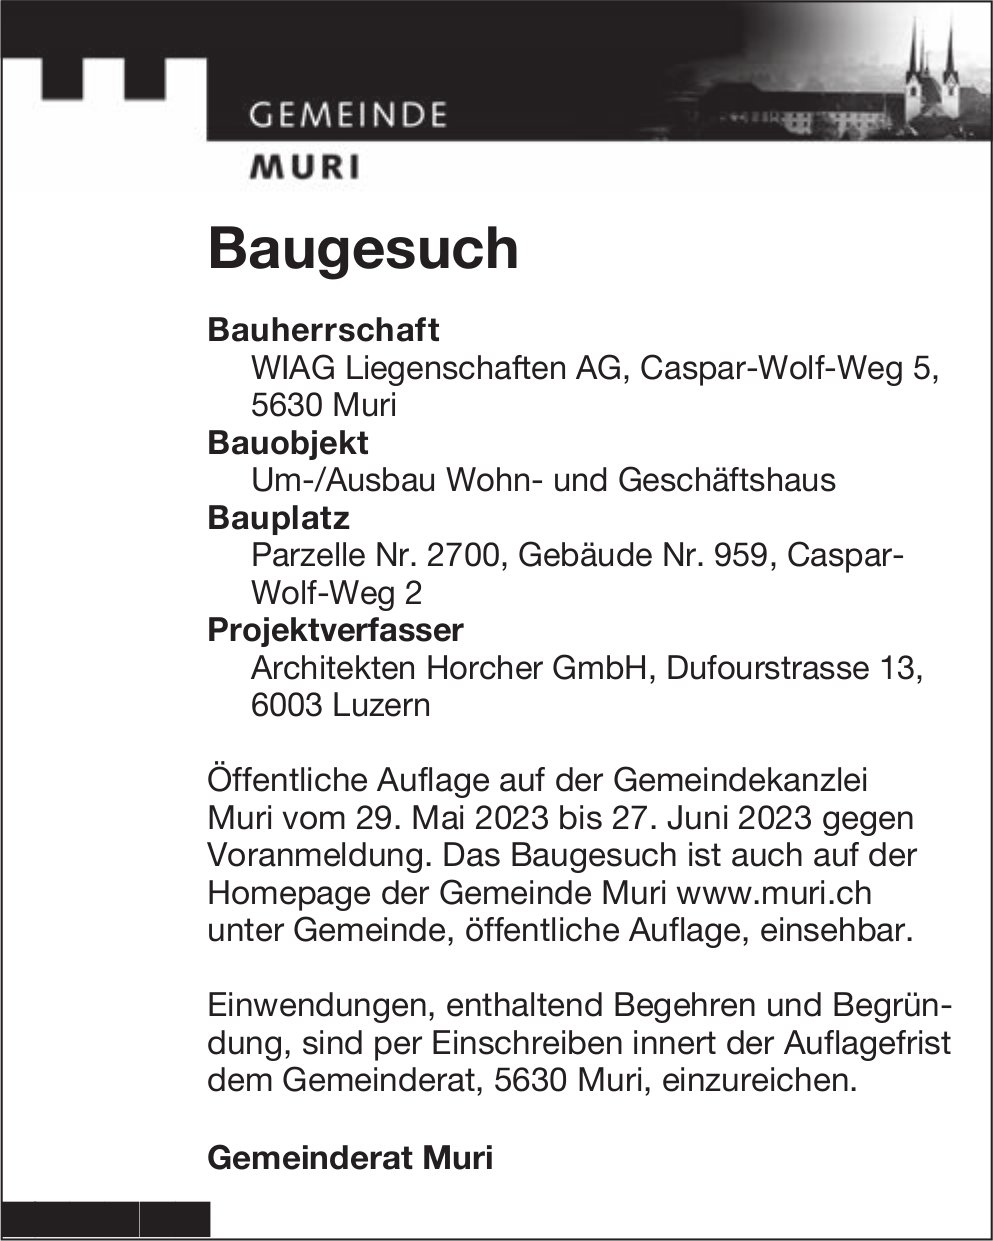 Baugesuche, Muri - WIAG Liegenschaften AG